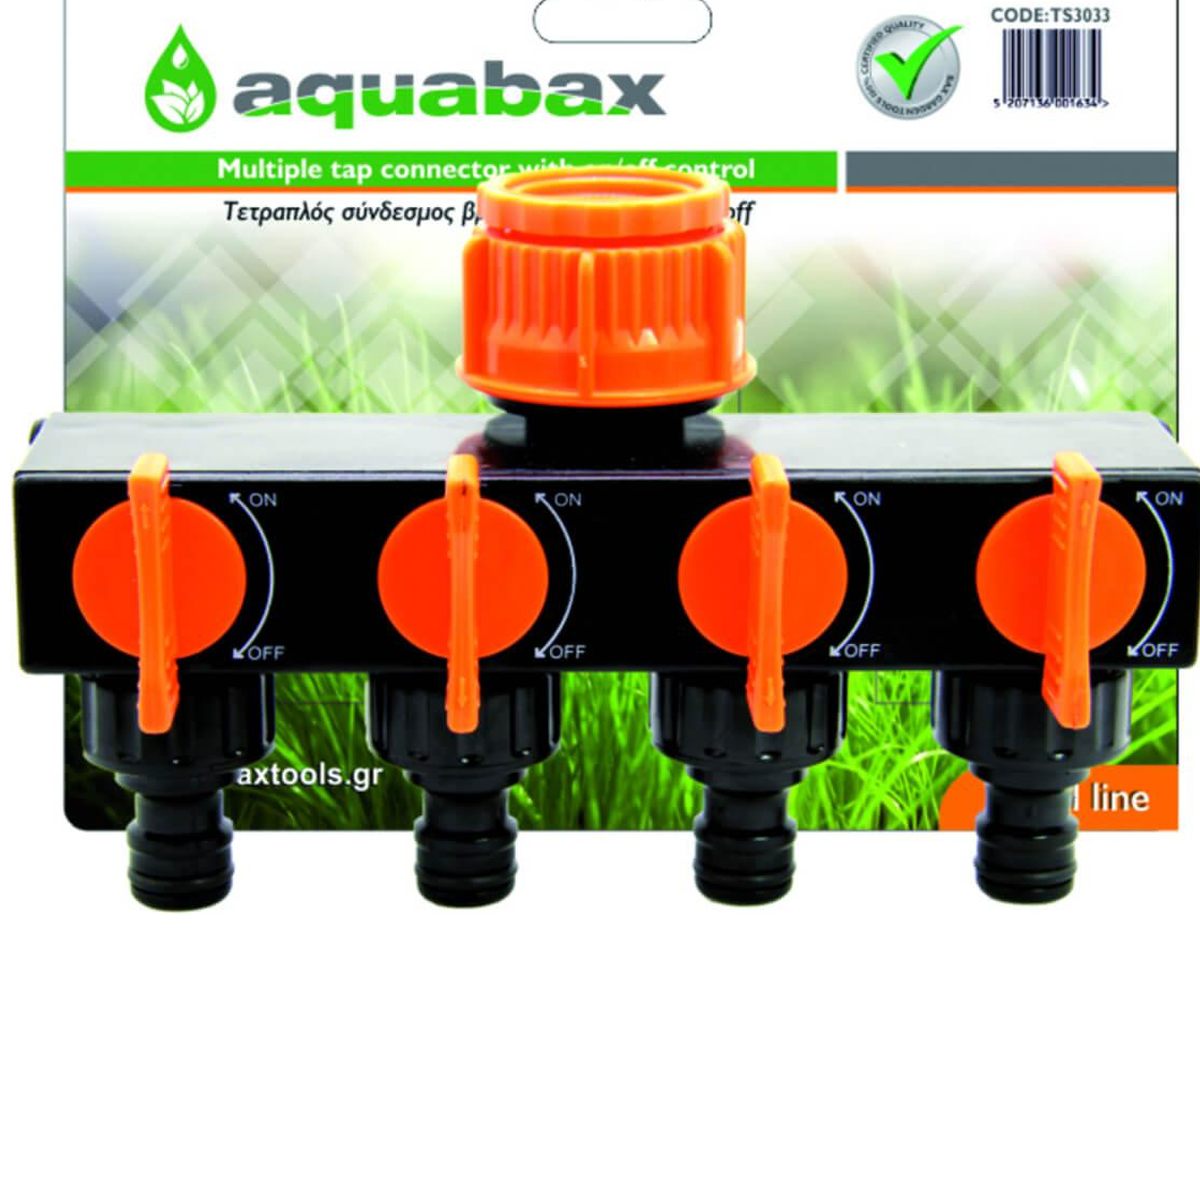 Διακλαδωτής - Τετραπλός σύνδεσμος με διακόπτες ON-OFF TS3033 Aquabax 